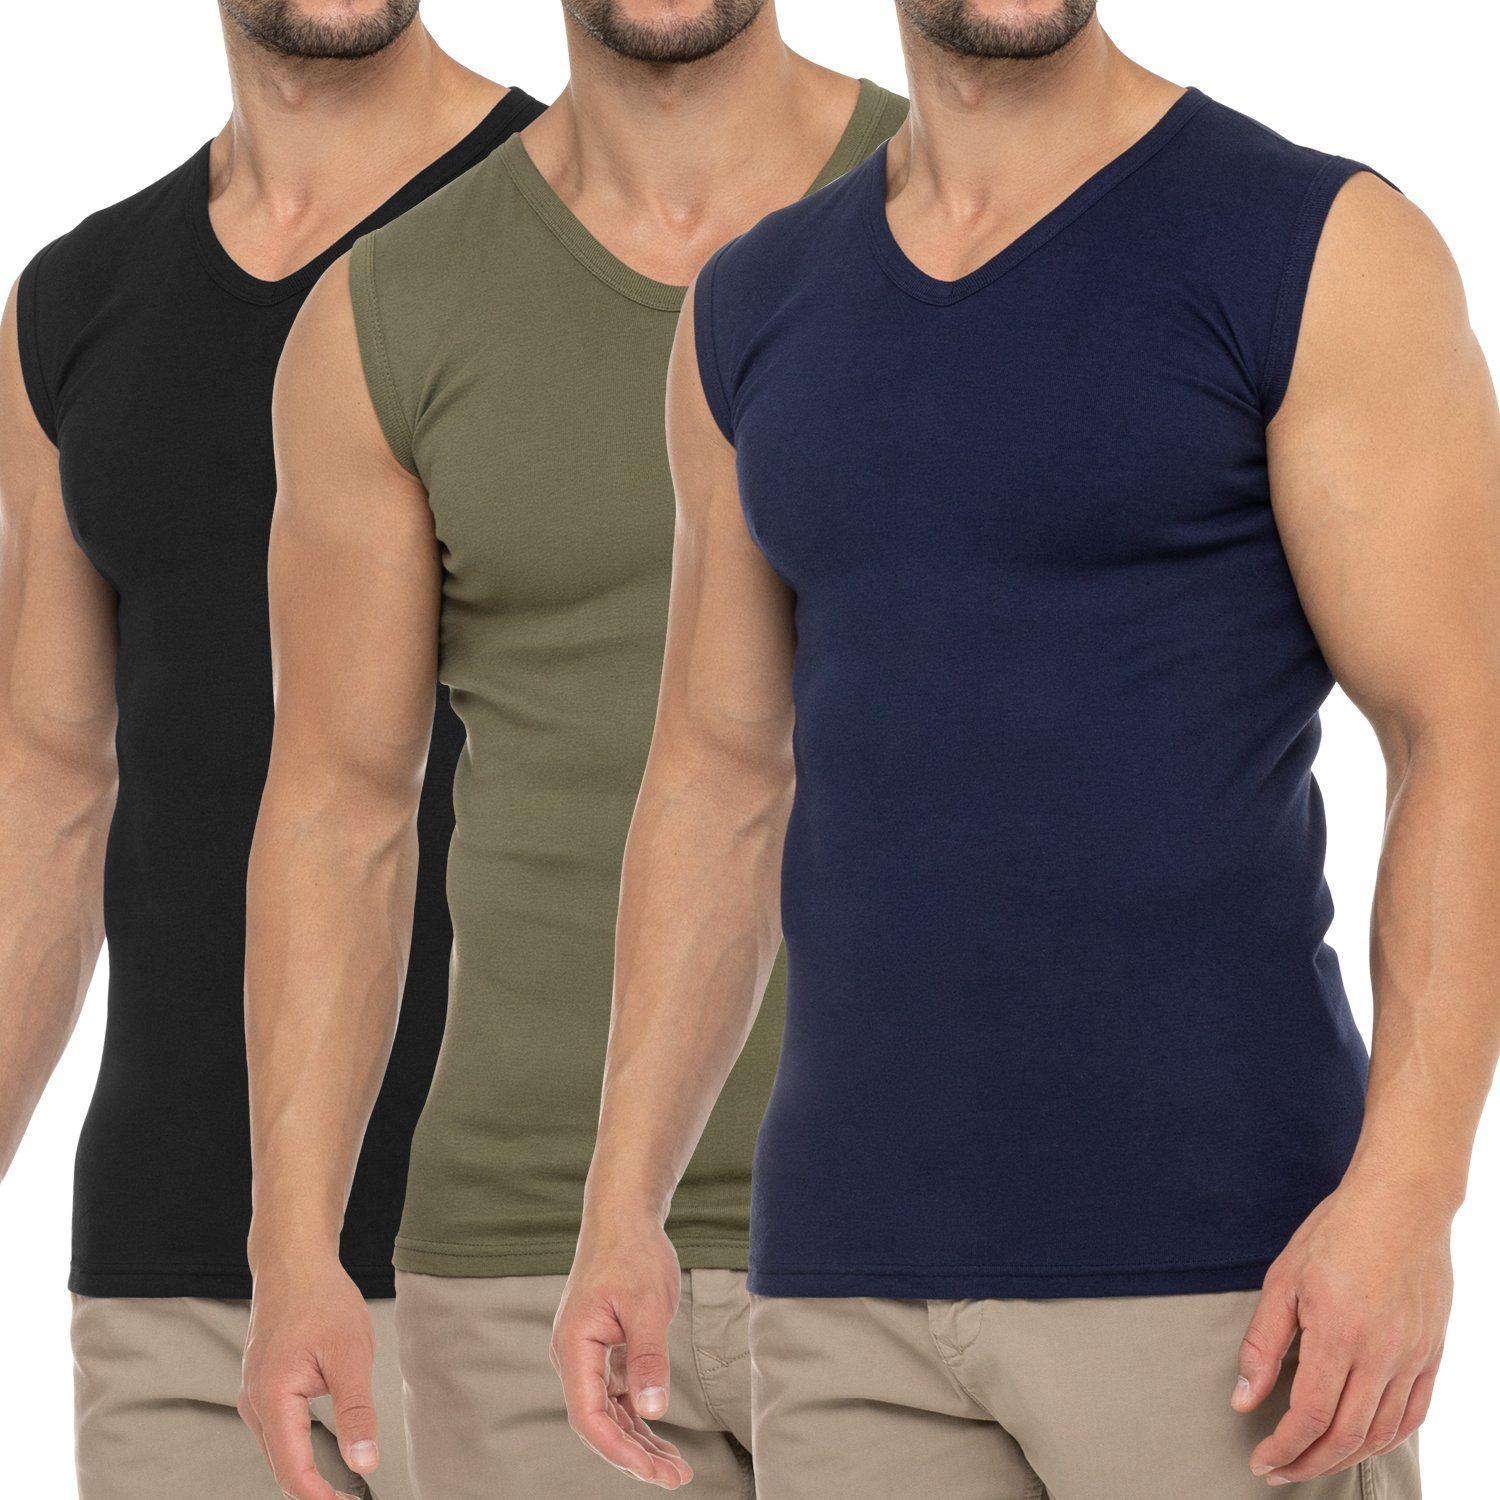 celodoro Herren / (3er Schwarz Marine V-Neck Shirt Pack) Unterhemd Muskelshirt Business Muscle / Olive